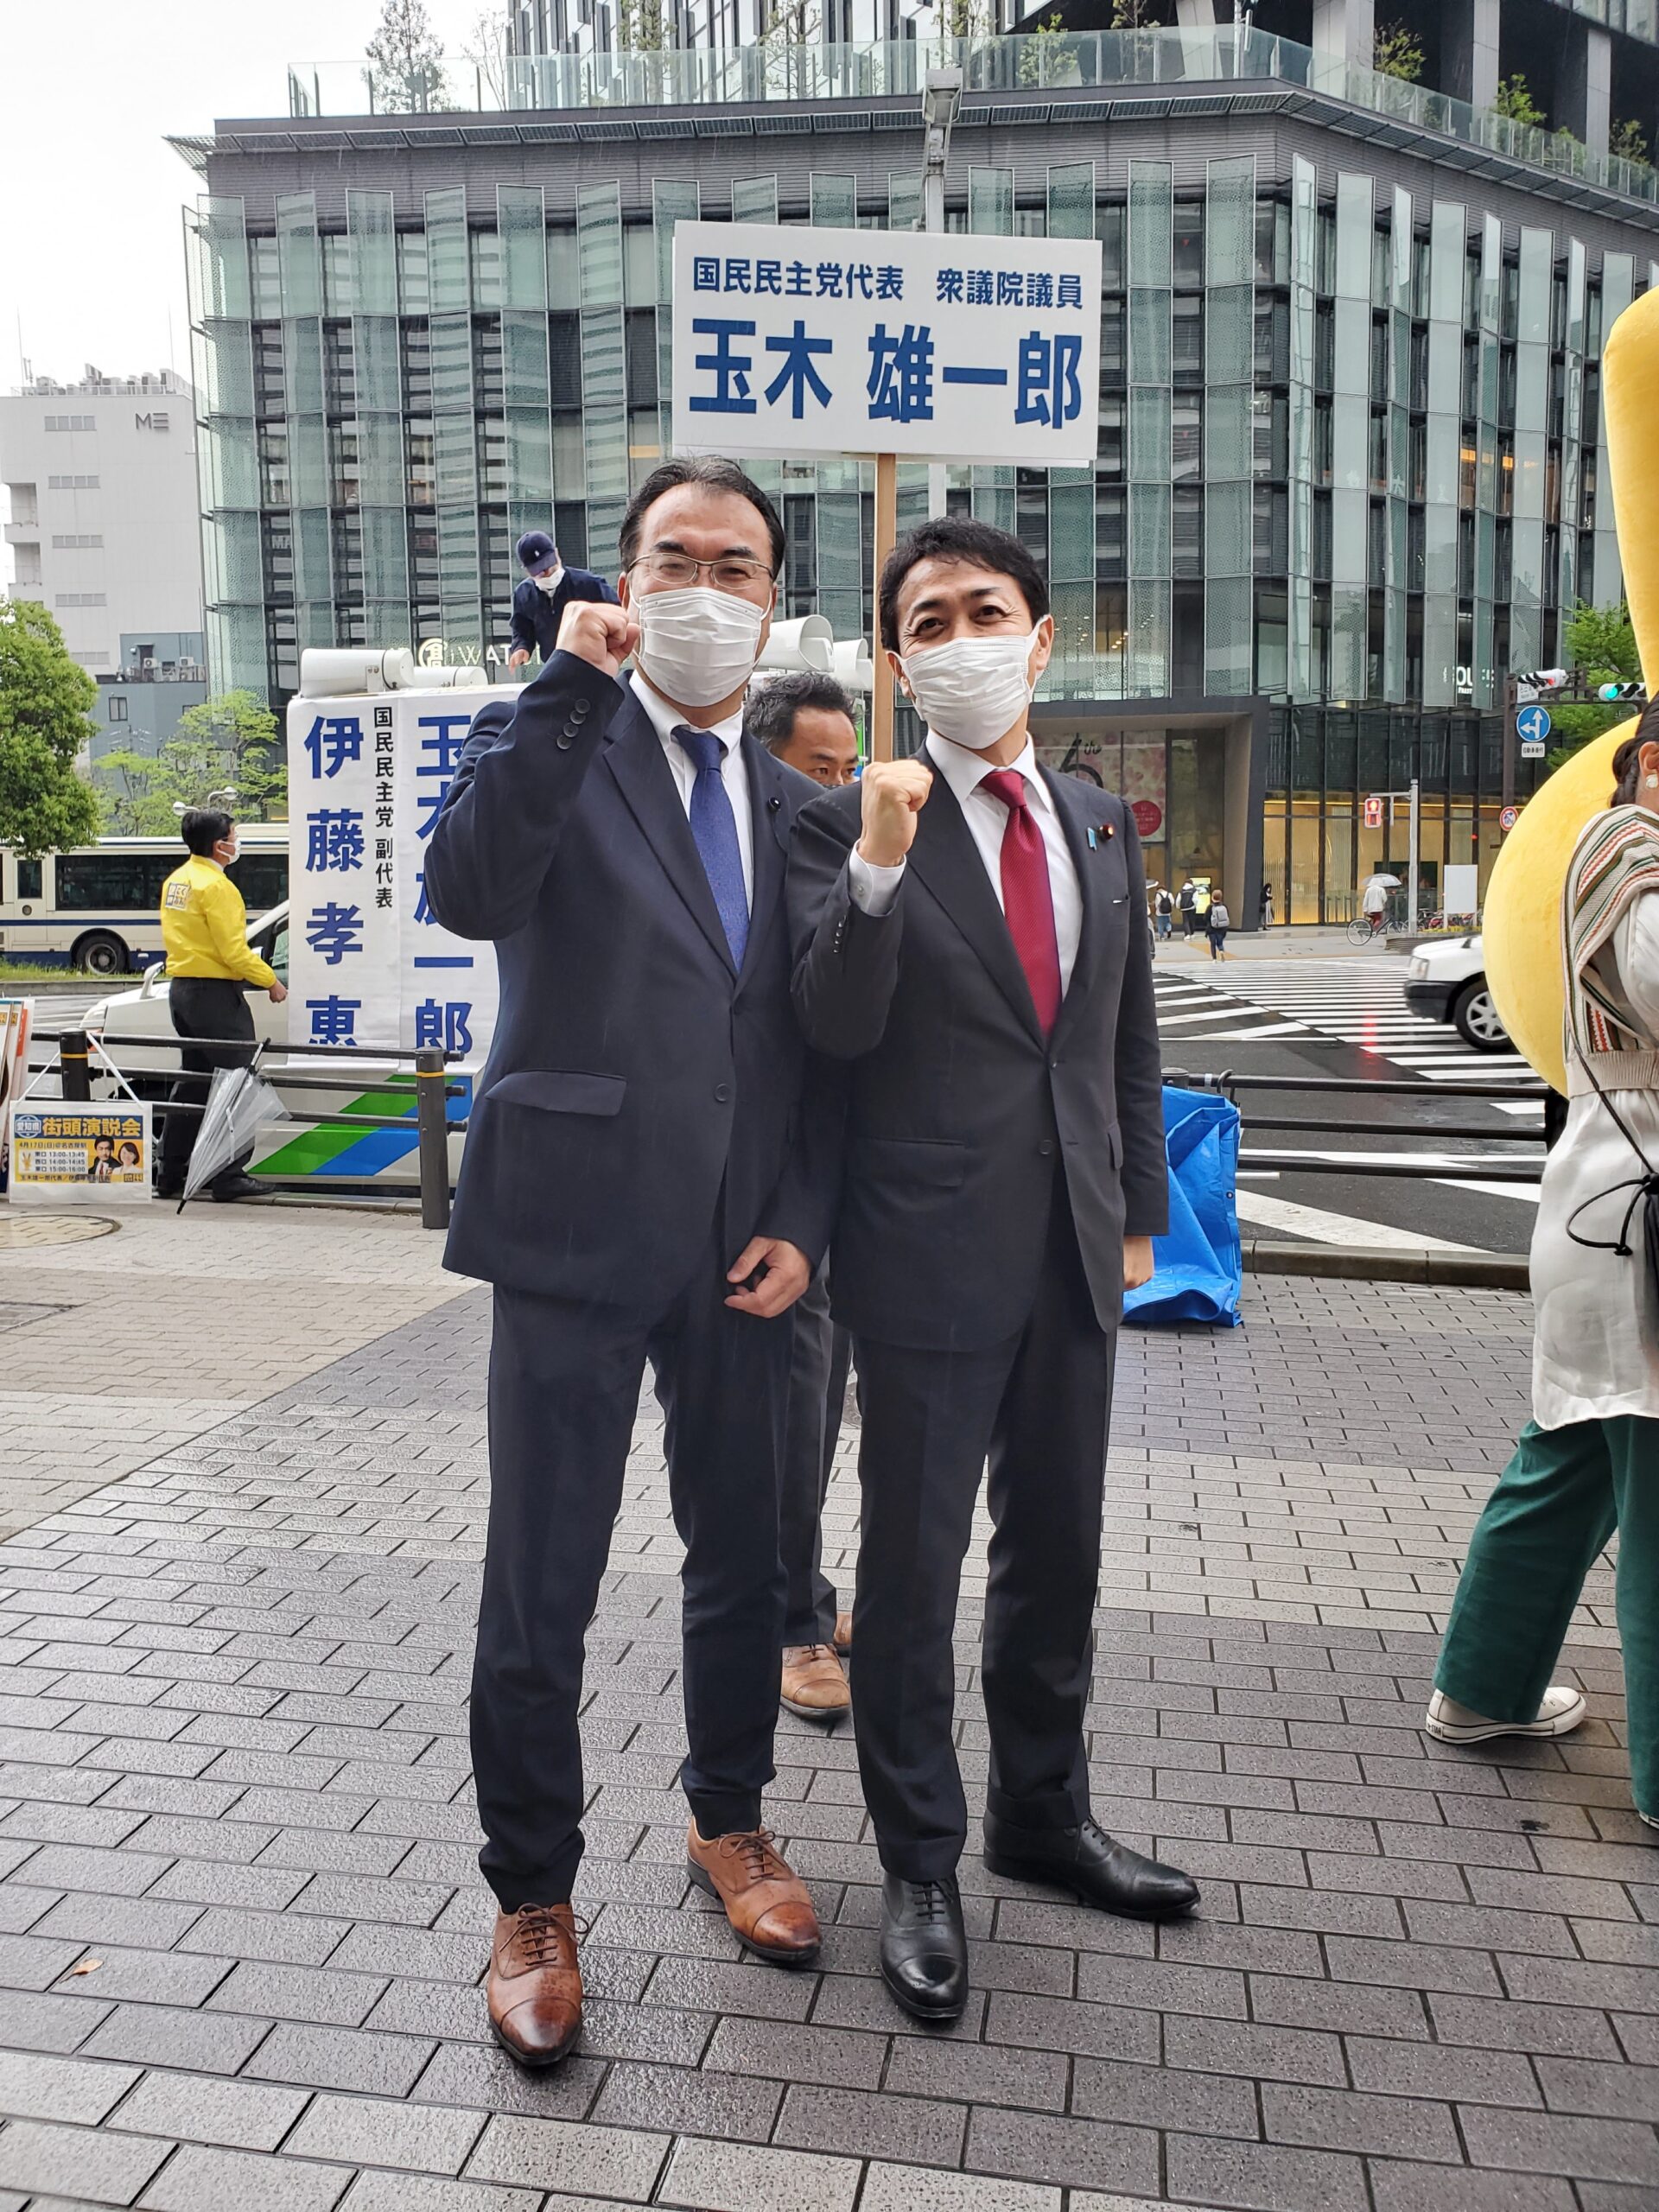 国民民主党の玉木代表と伊藤たかえ参議院議員と共に名古屋駅で街頭演説会行わせて頂きました。